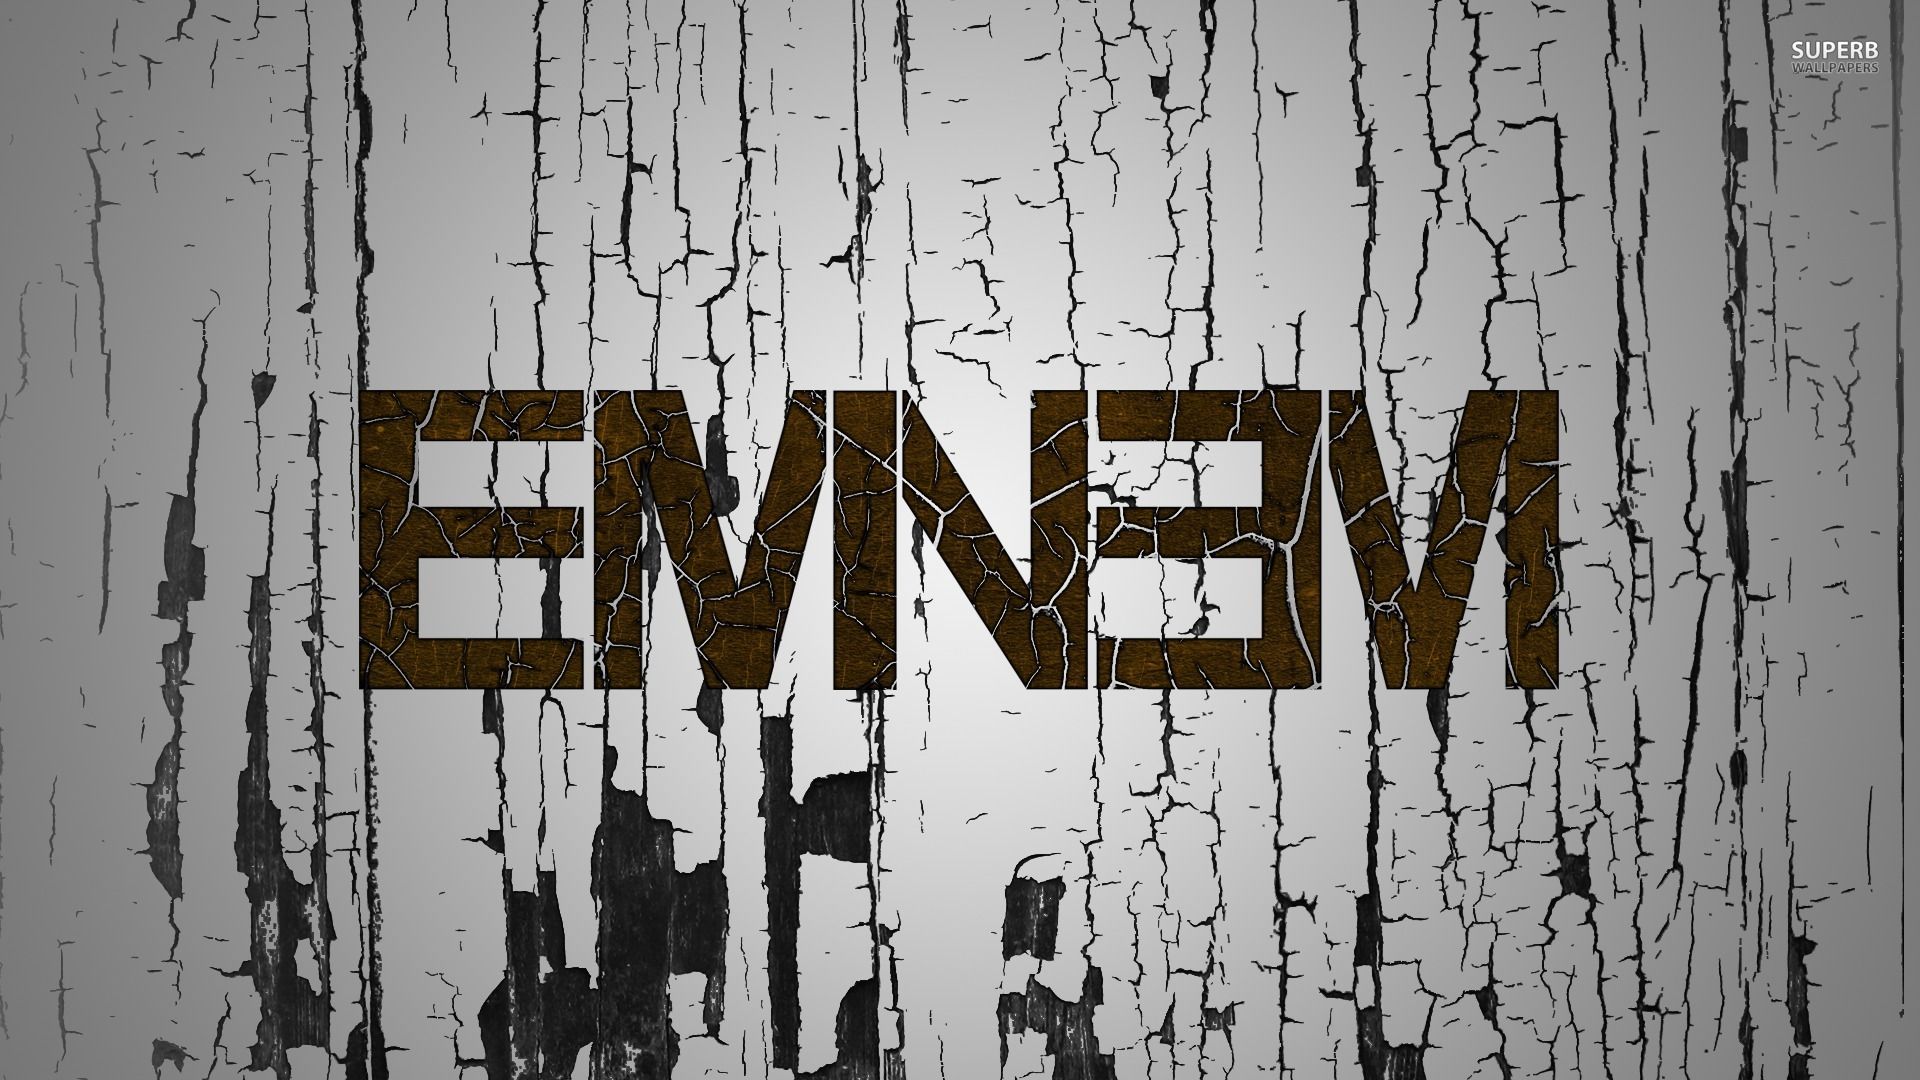 Eminem Logo Wallpaper Top Background